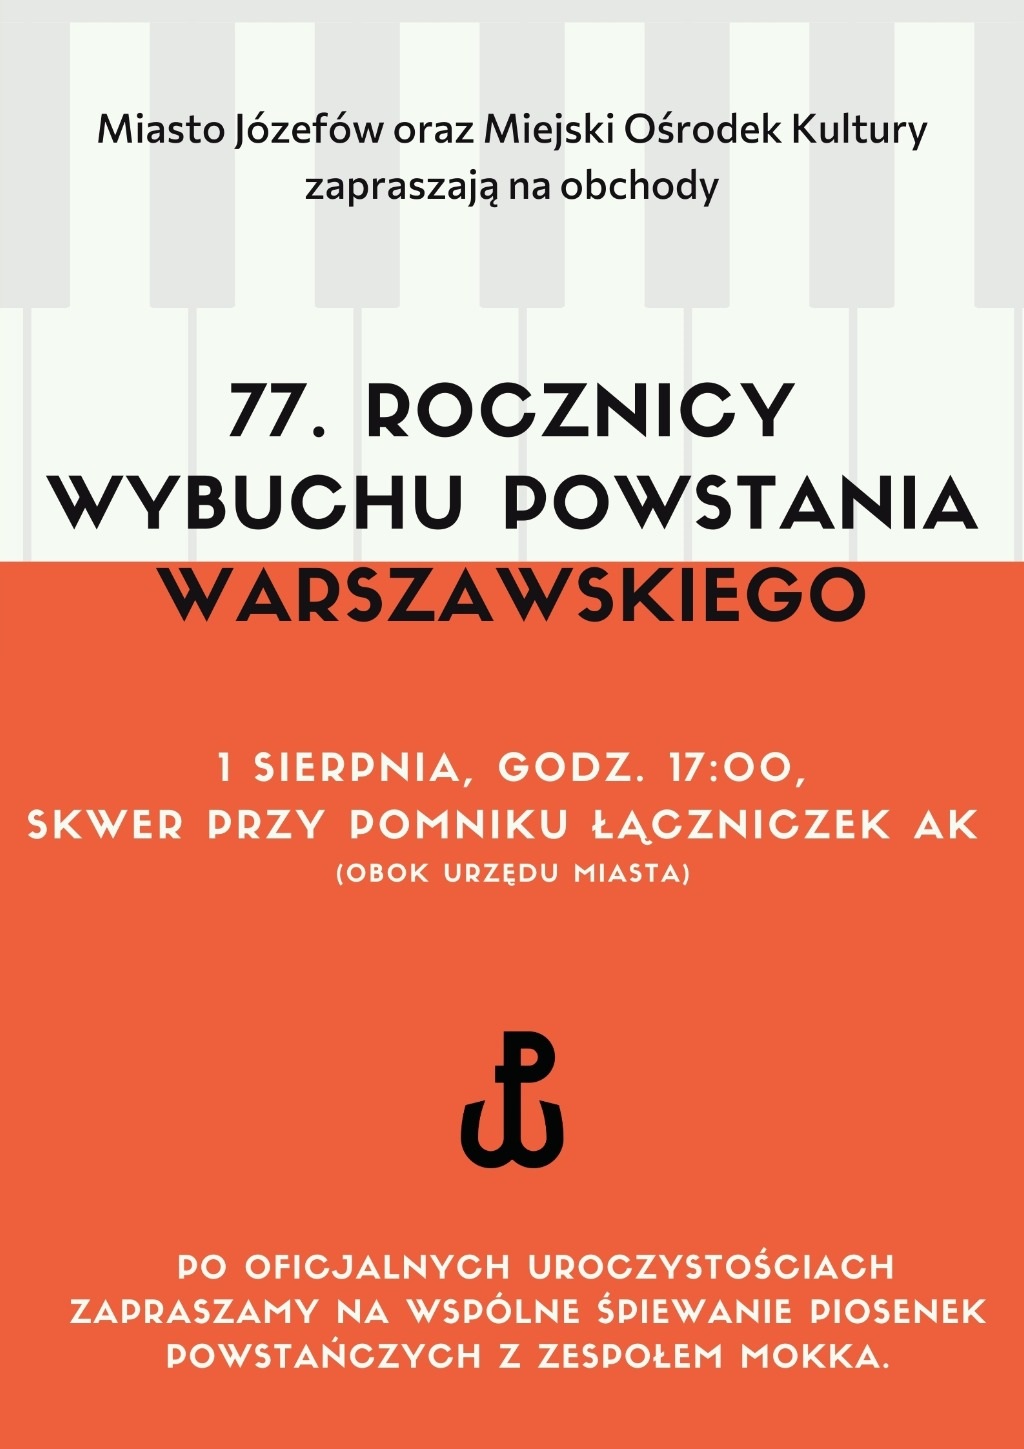 Plakat z informacjami o koncercie. Biało czerwone tło, symbol Polski Walczącej.